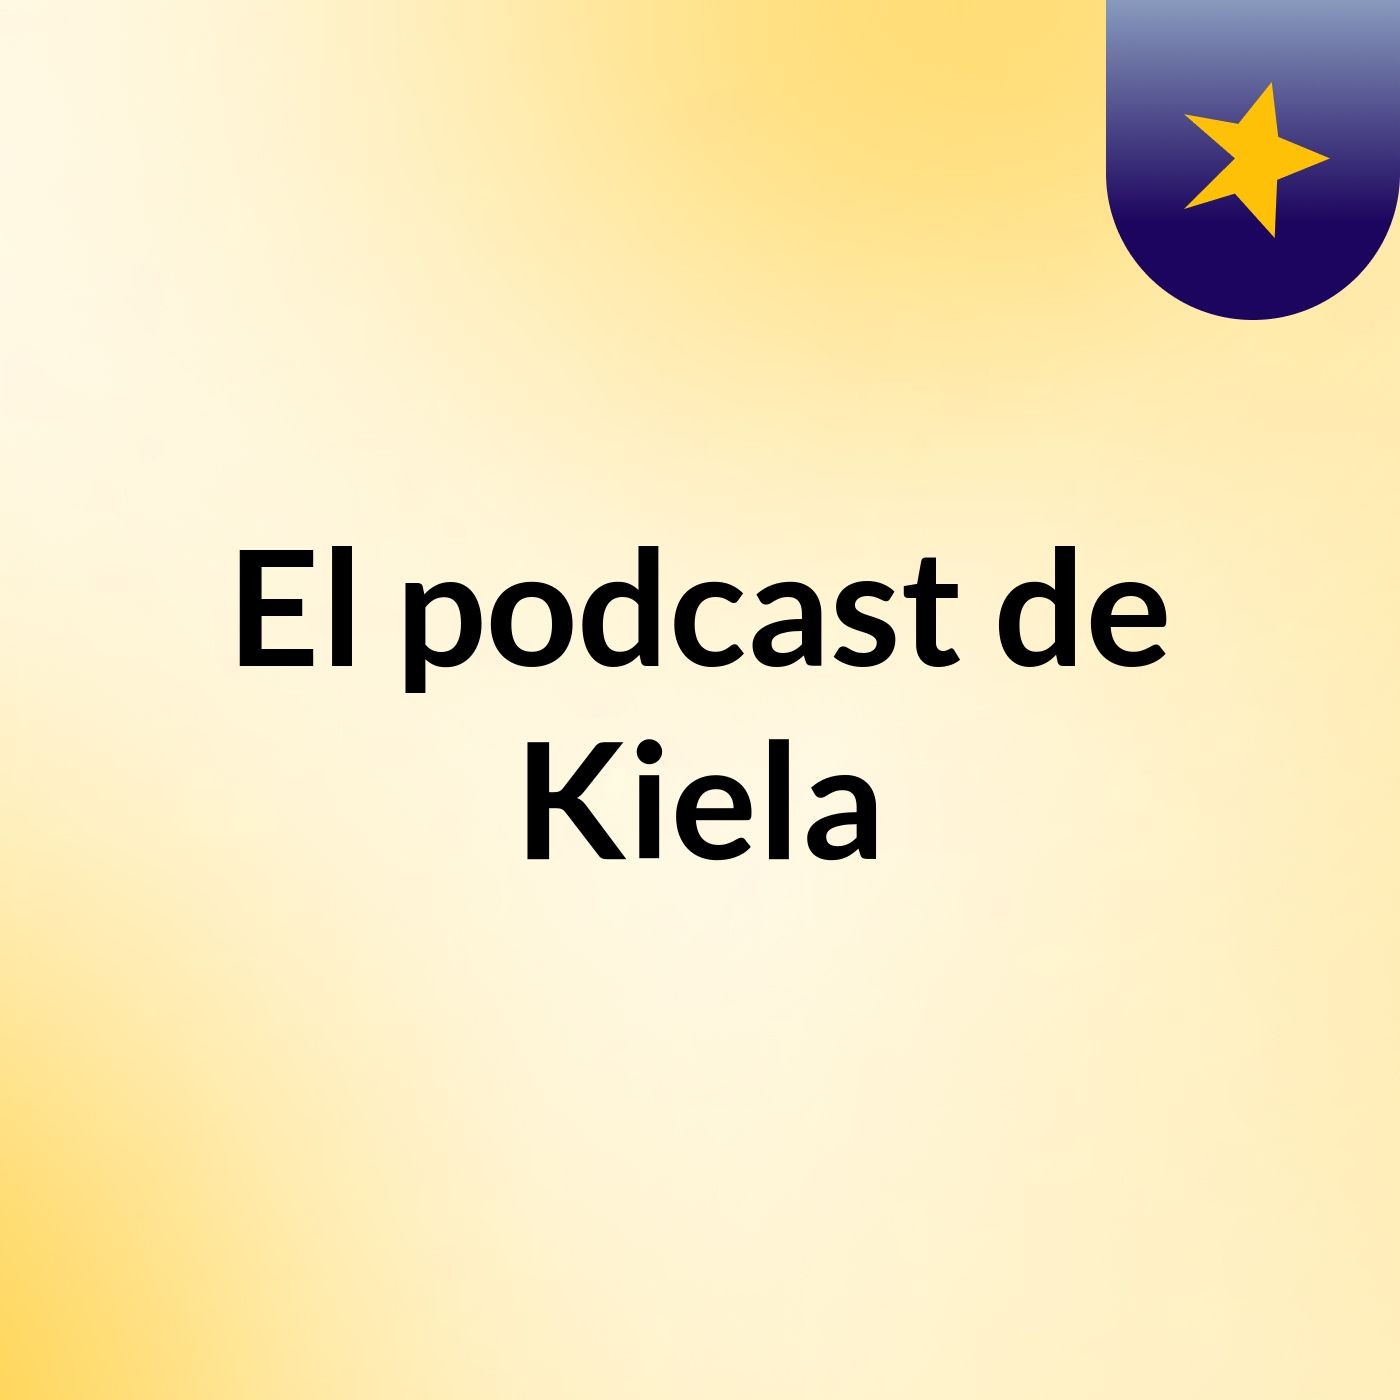 El podcast de Kiela